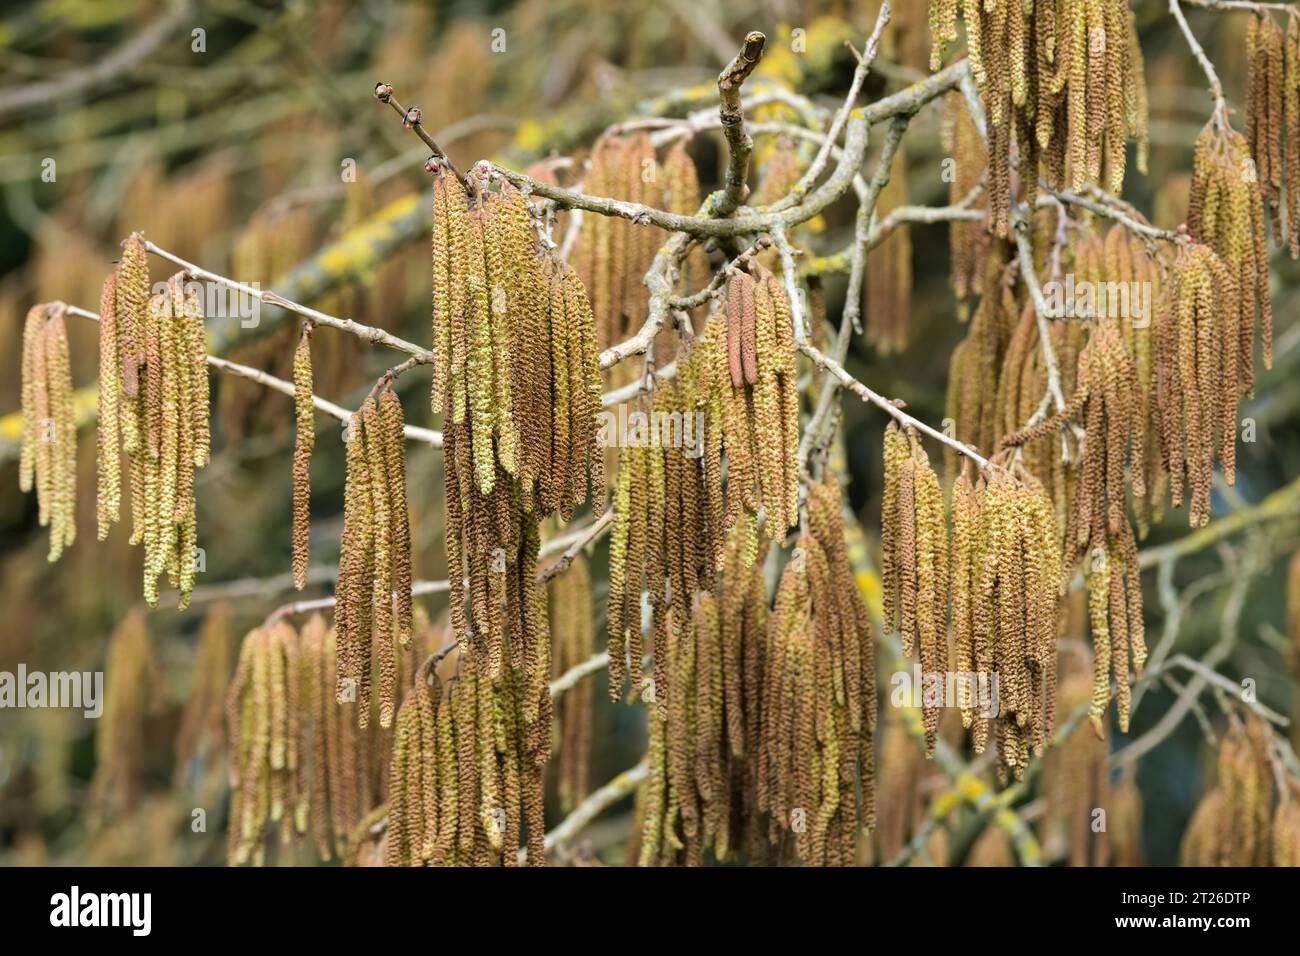 Corylus colurna, Hazel turc, filbert turc, longues chatons jaunes à la fin de l'hiver/au début du printemps Banque D'Images